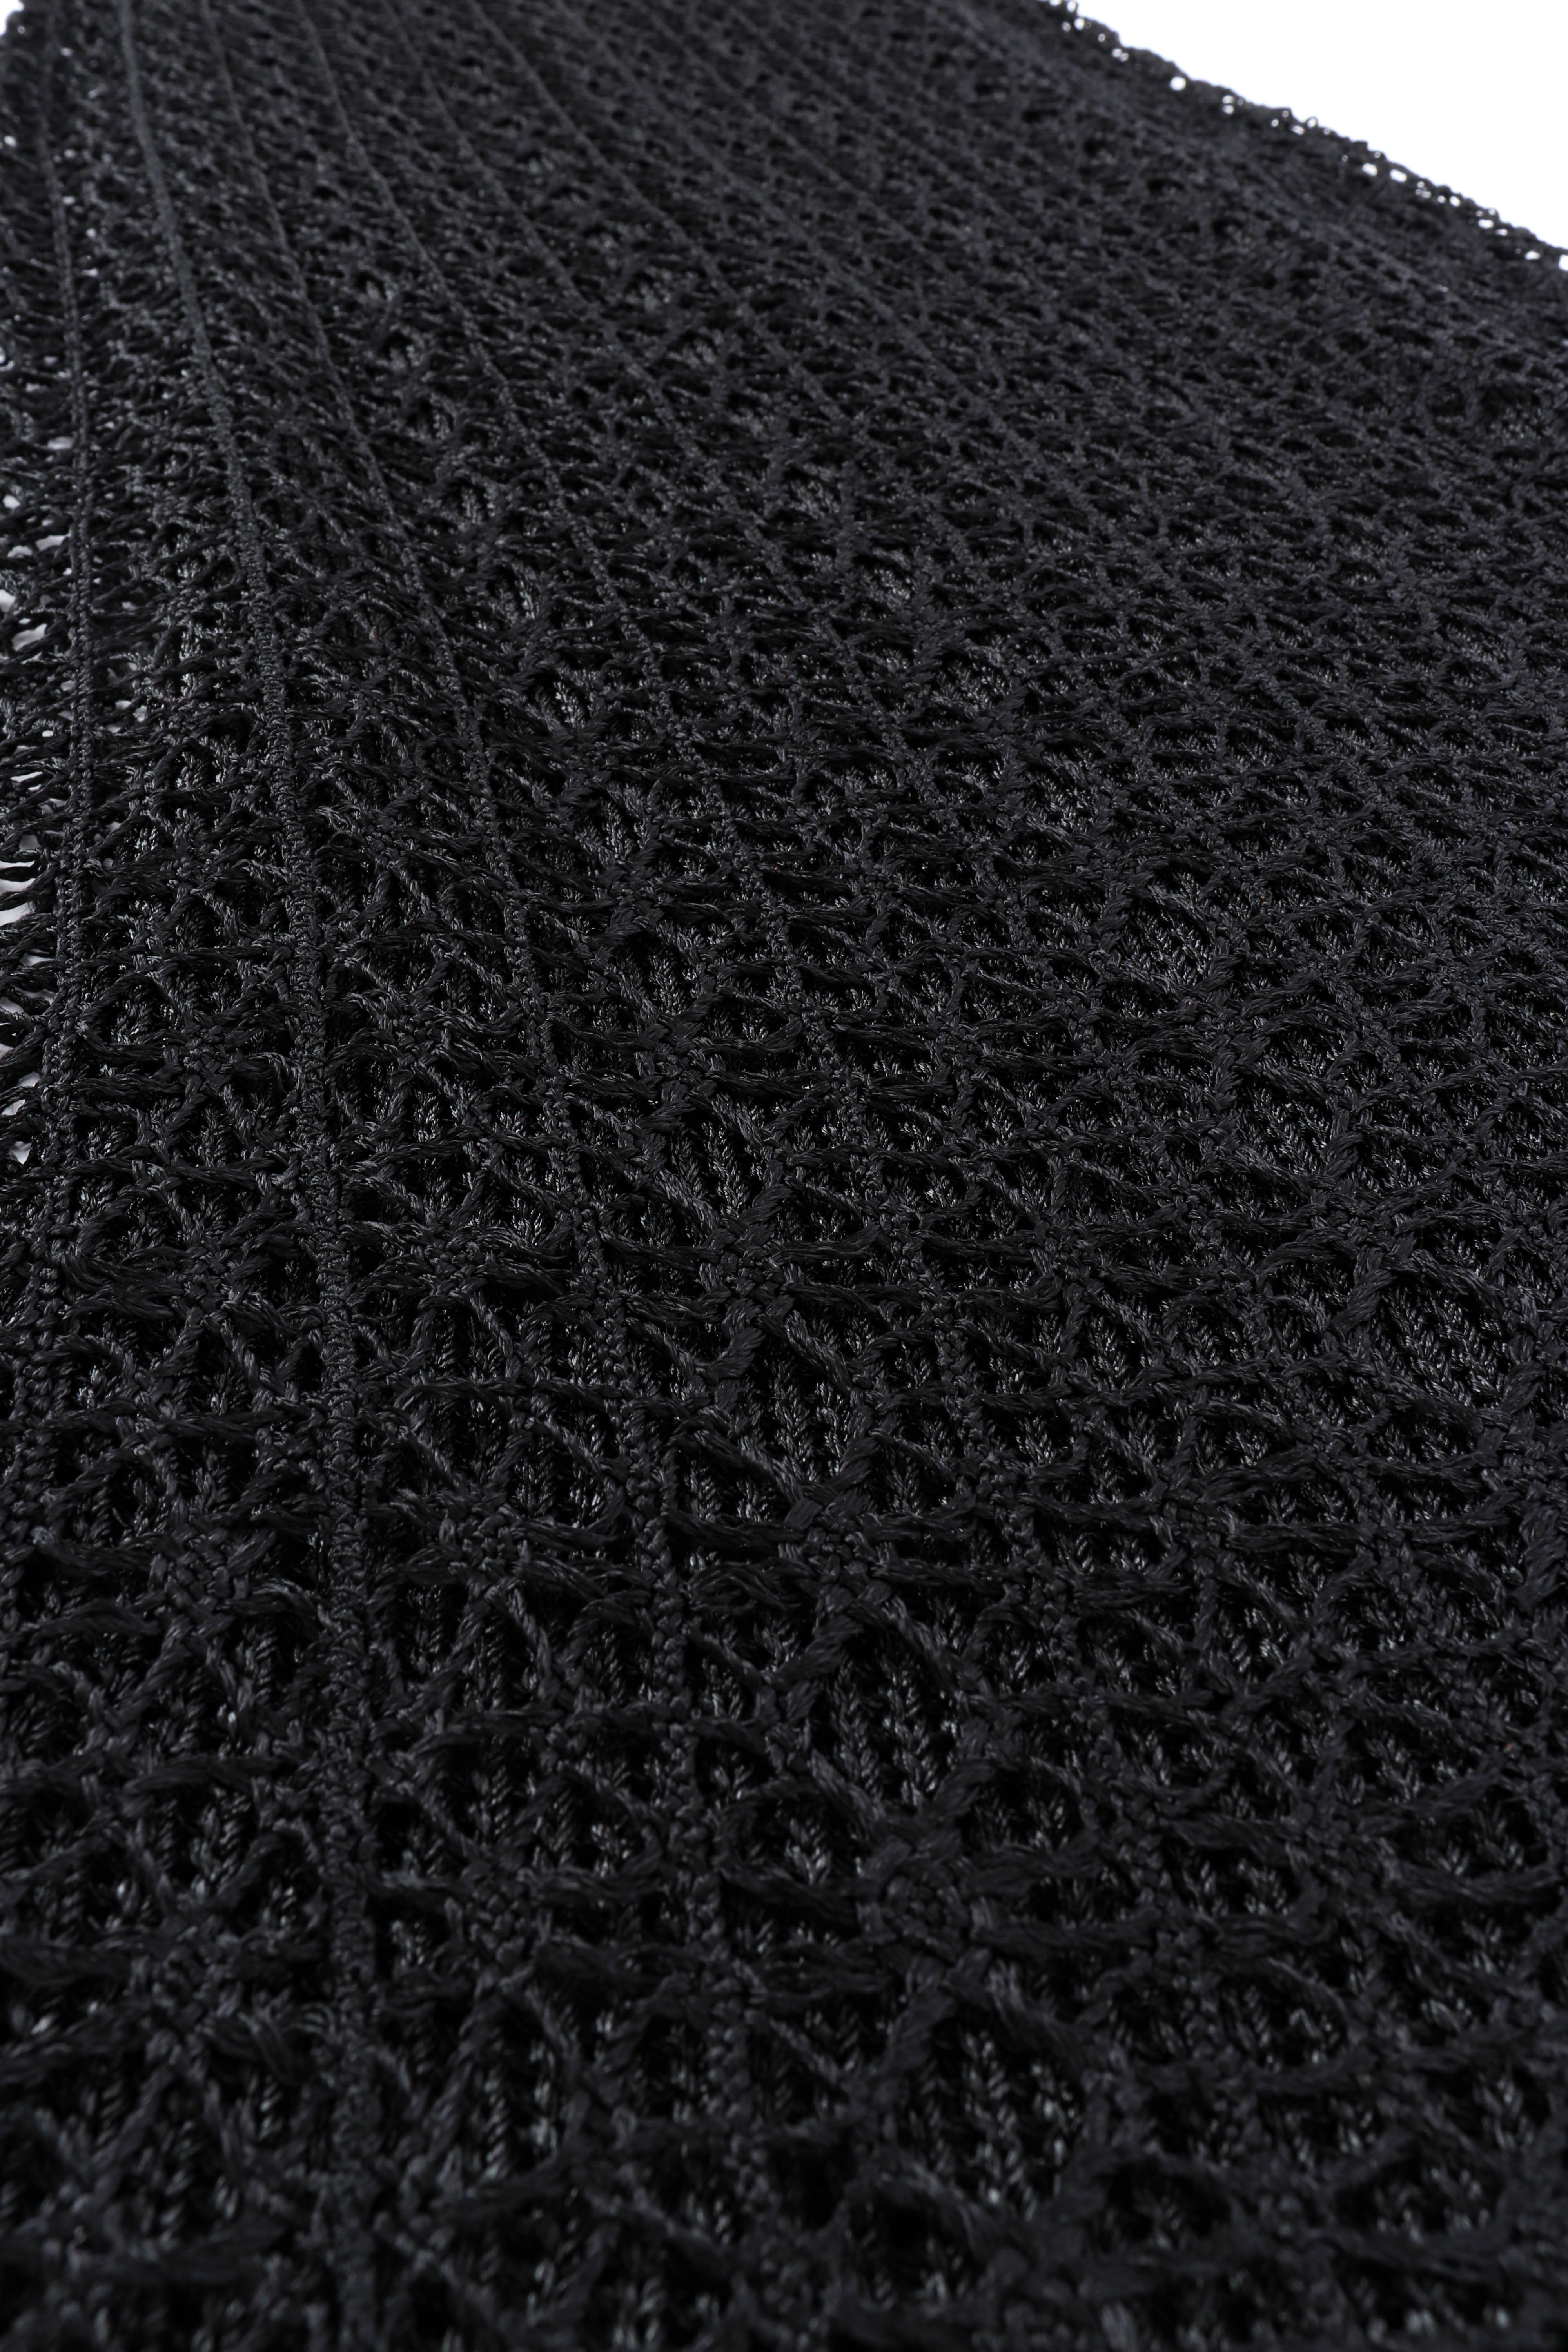 Vintage Christian Lacroix Open Knit Crochet Dress fabric closeup @recessla